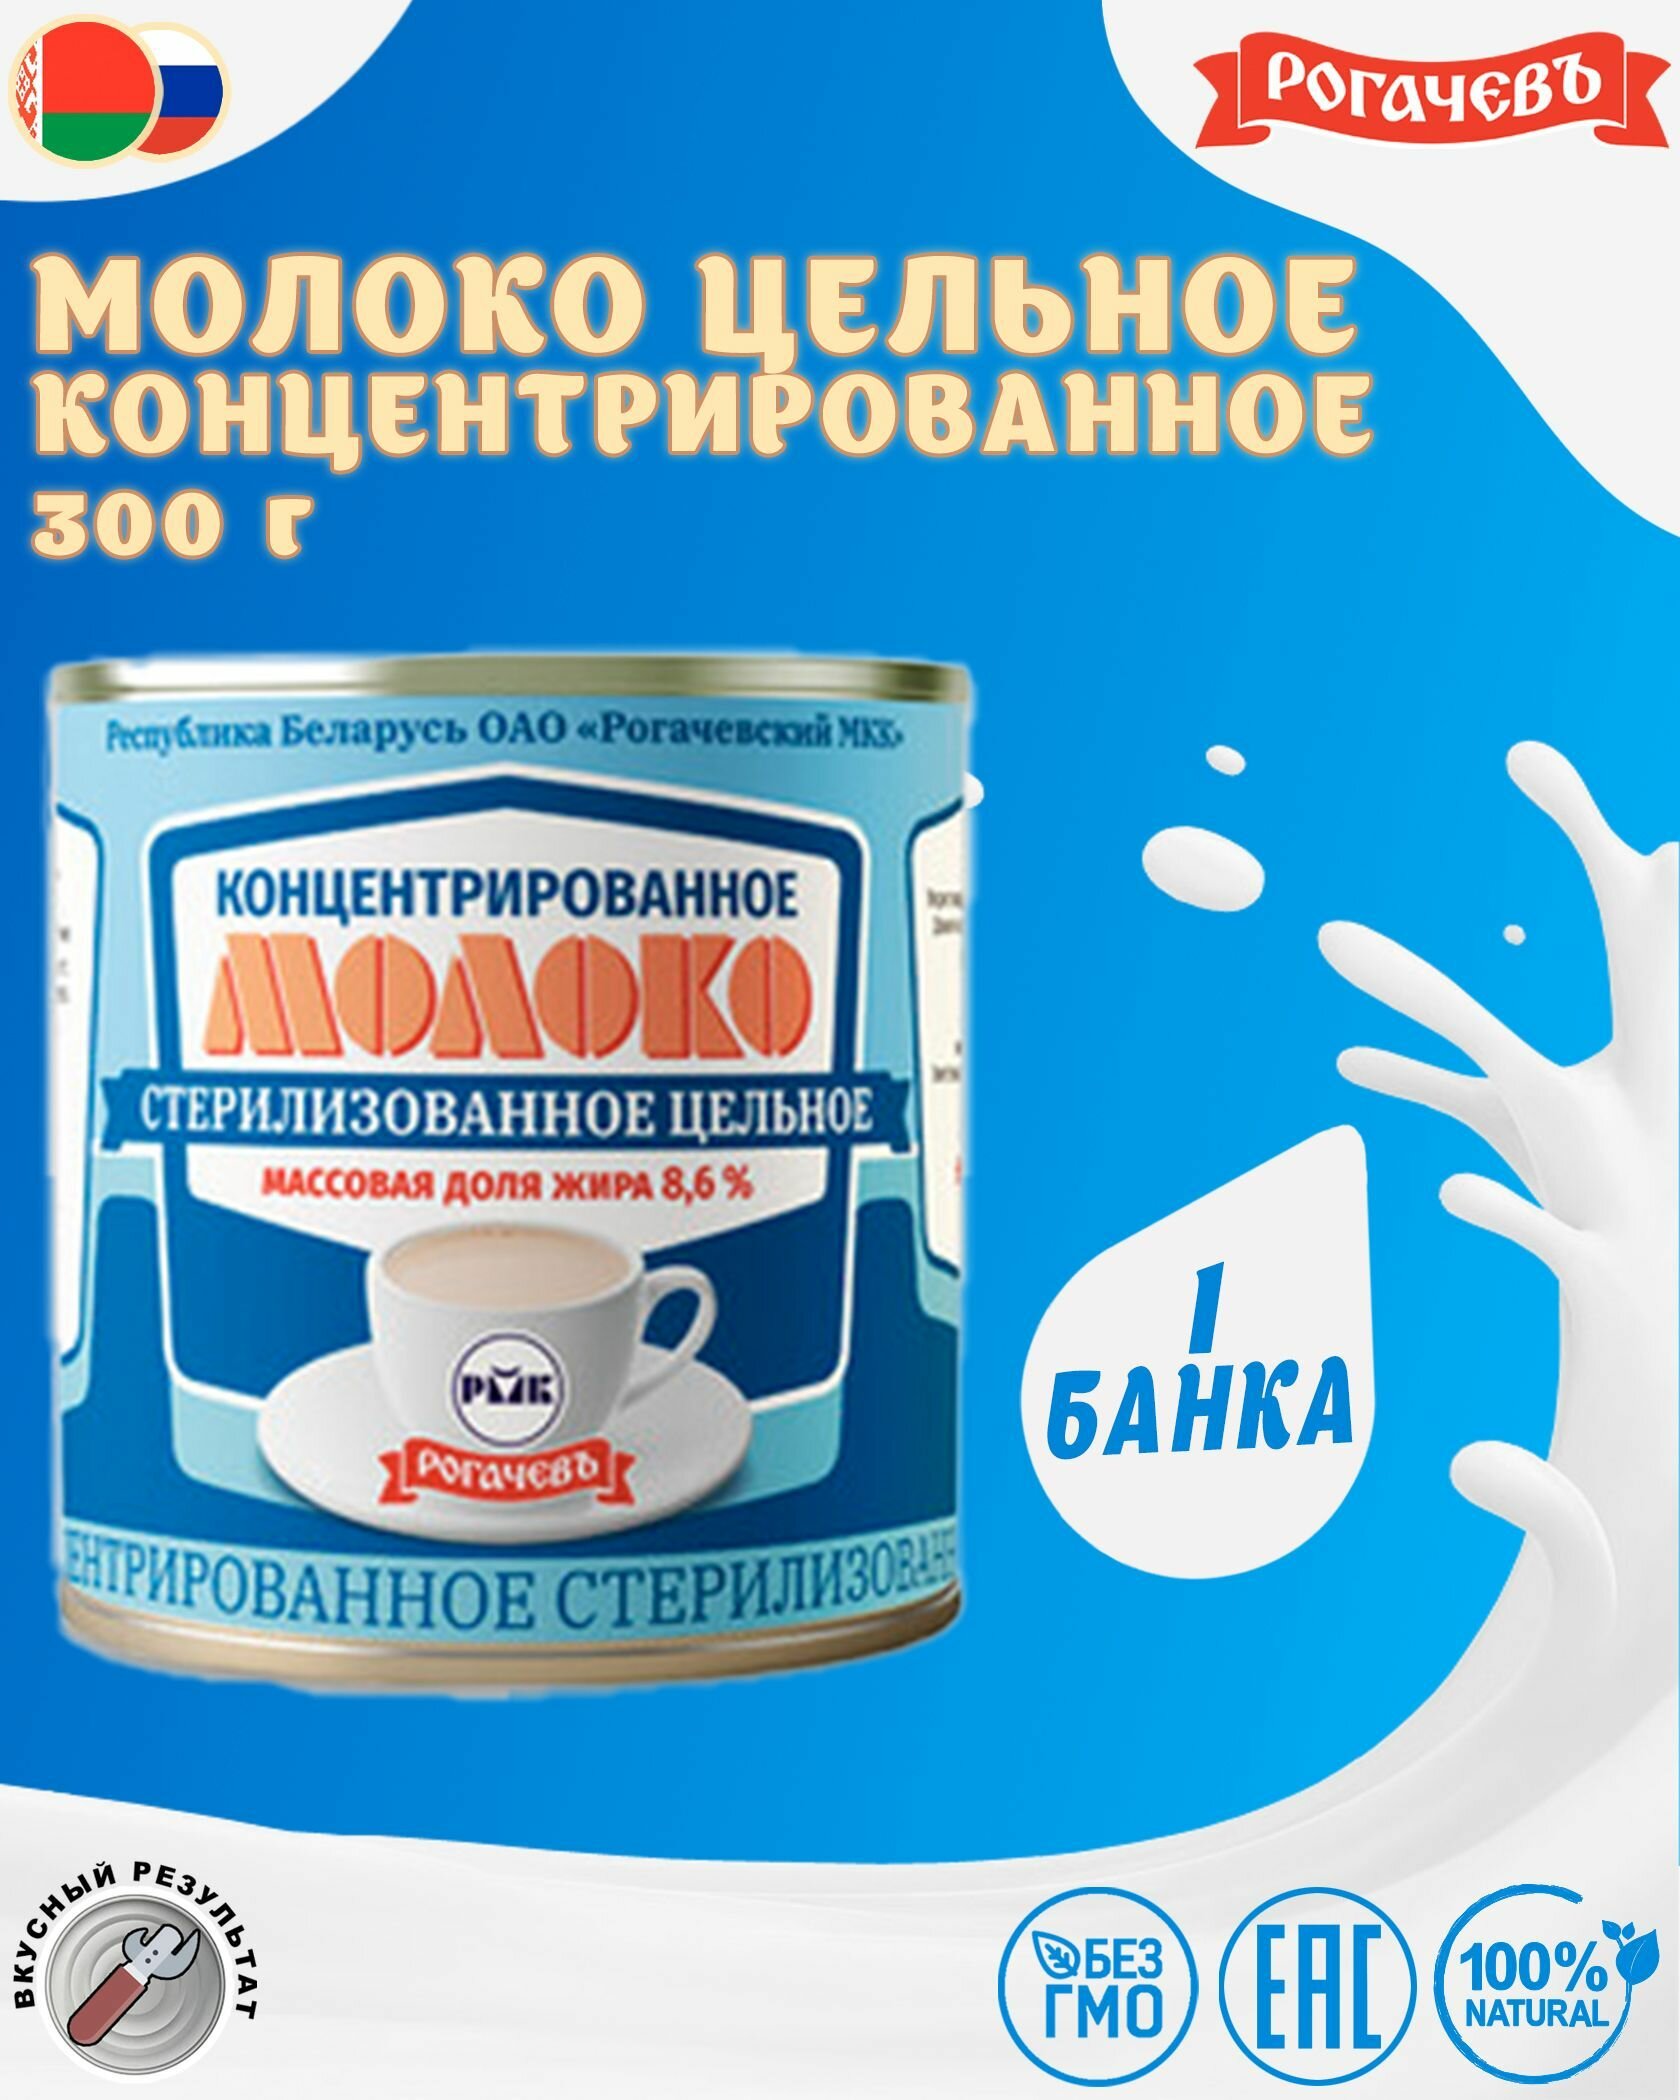 Молоко концентрированное цельное, 8,6%, Рогачев, 1 шт. по 300 г